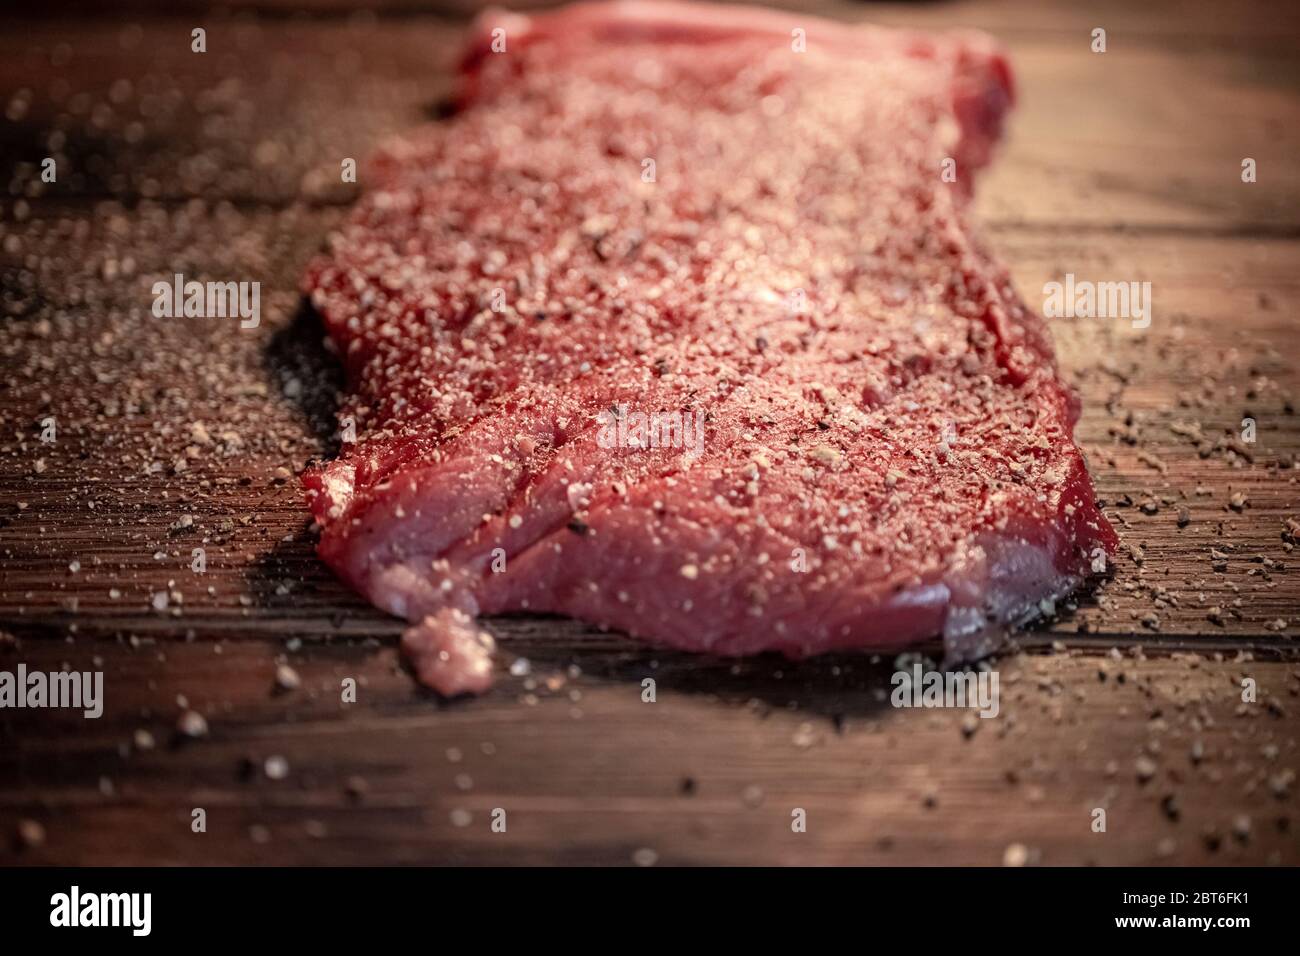 Pfeffer und Gewürze auf dem rohen Fleischsteak aus nächster Nähe mischen Stockfoto